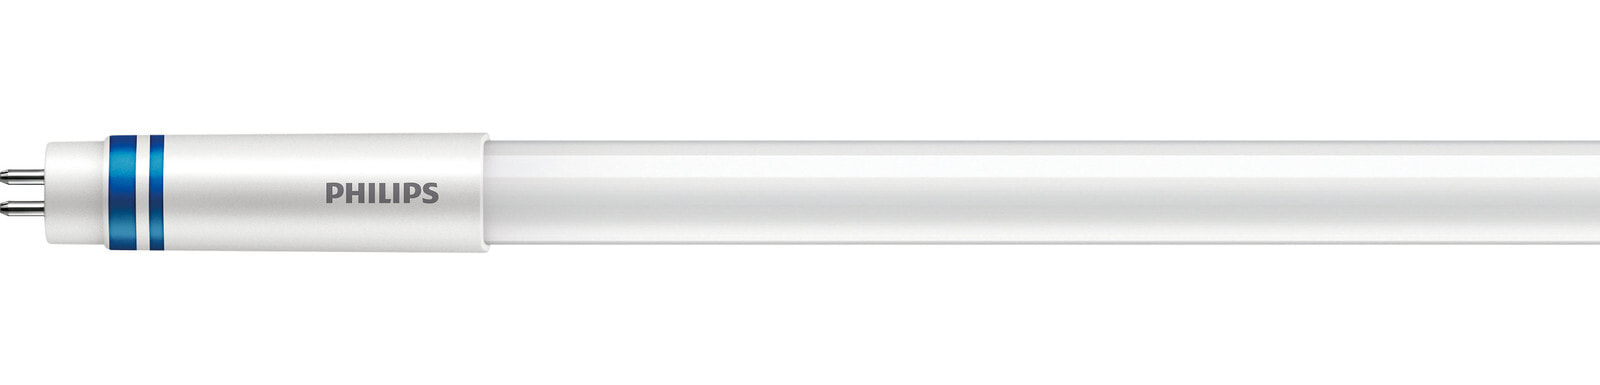 Philips Master LEDtube LED лампа 26 W G5 A++ 74961300